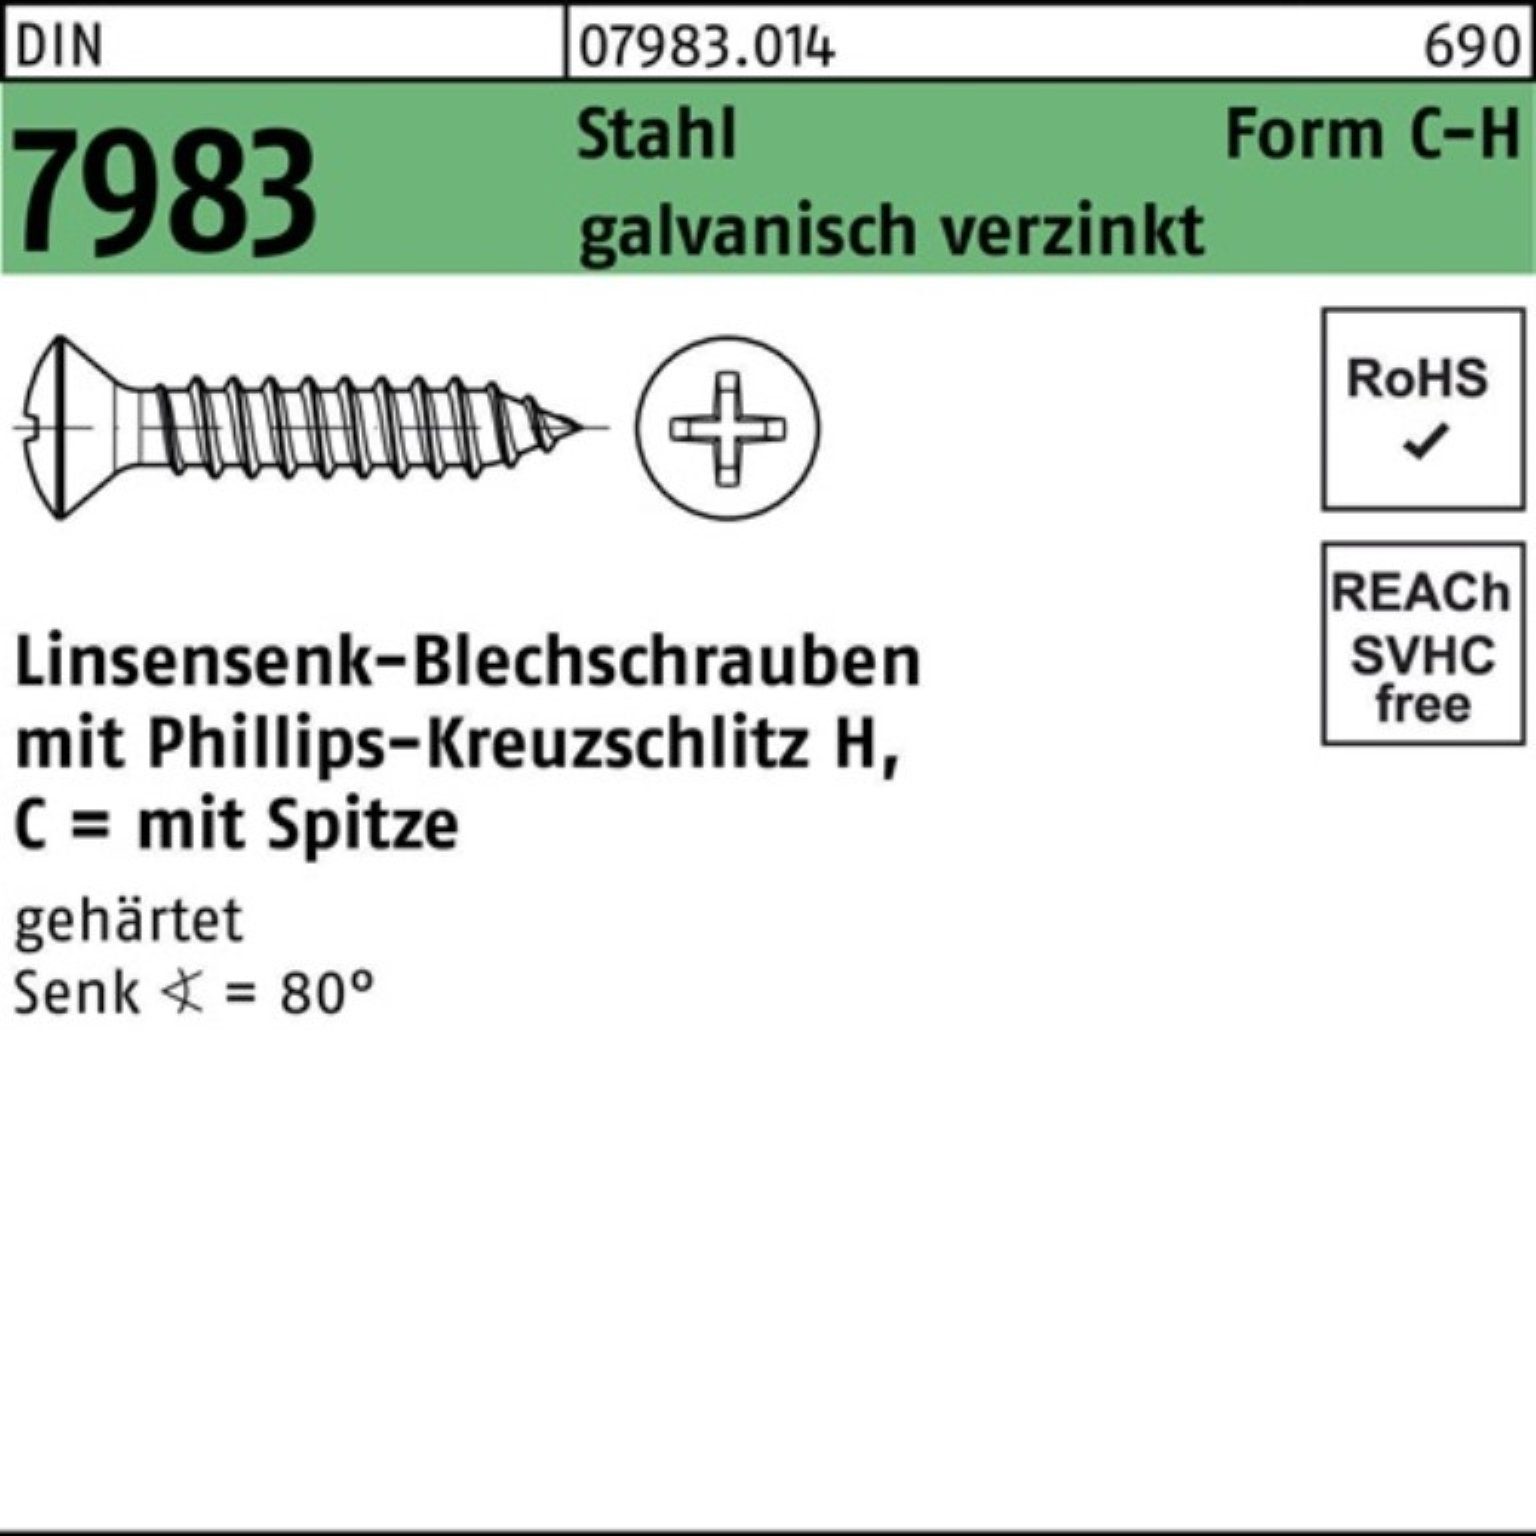 PH 7983 Pack geh. Stahl Linsensenkblechschraube Reyher C 4,2x9,5-H 1000er Schraube DIN